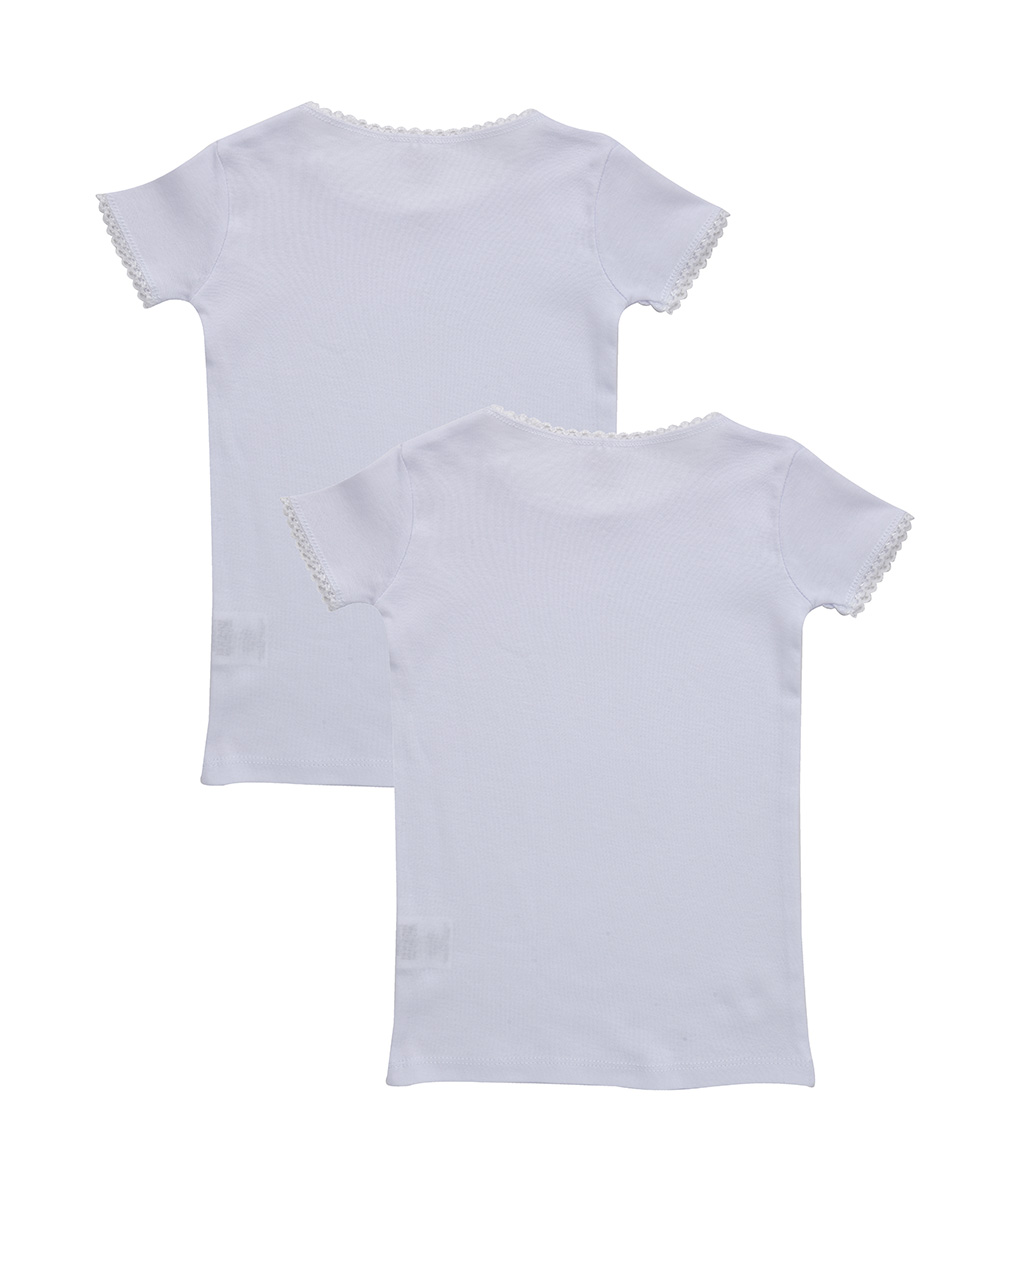 T-shirt pambuku, Prenatal